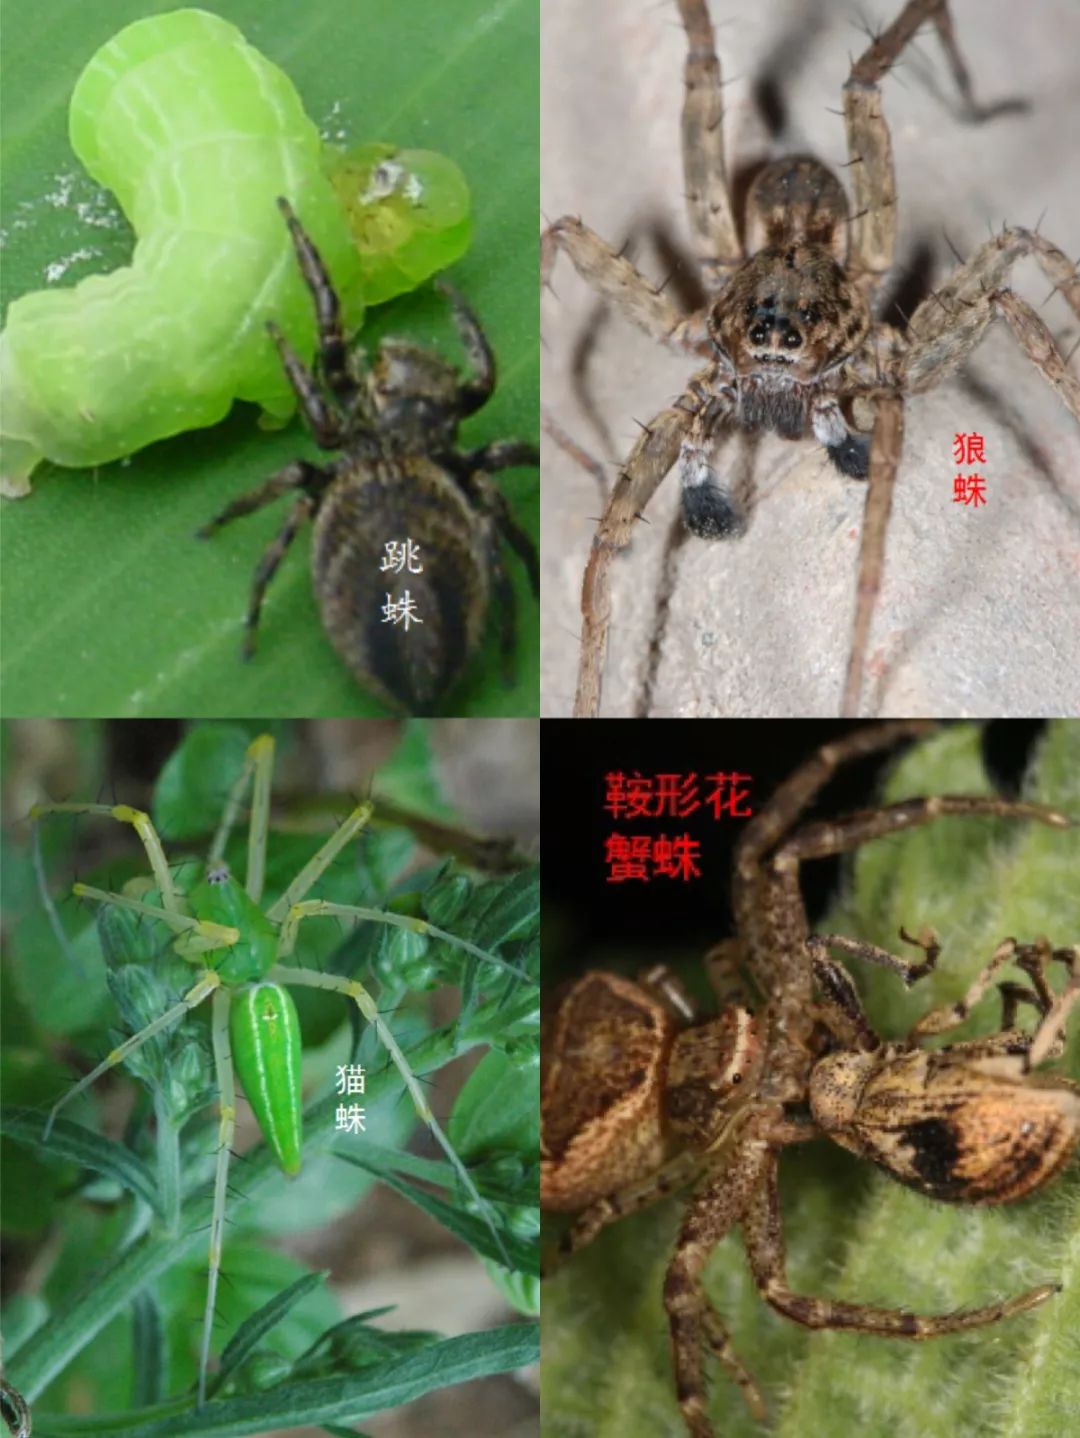 认真说 被蜘蛛咬了会有什么超能力 生物学家陈建 上海自然博物馆 微信公众号文章阅读 Wemp